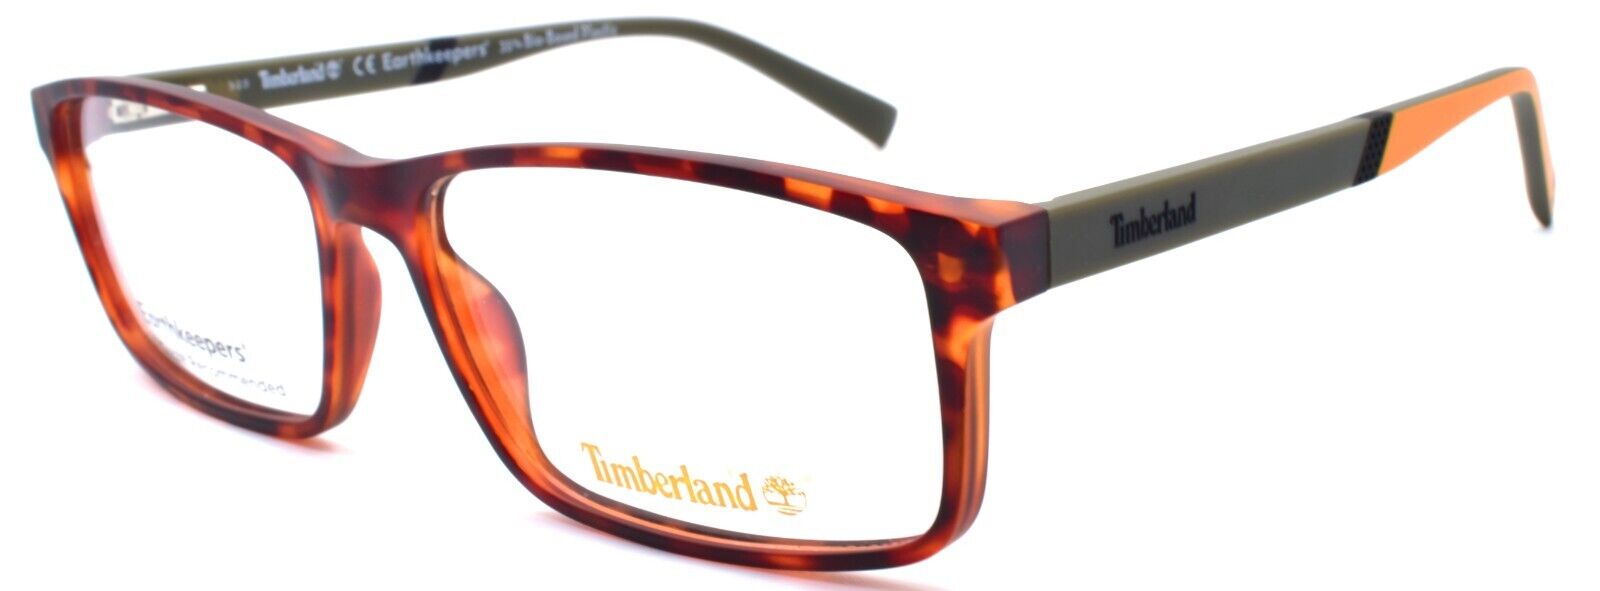 1-TIMBERLAND TB1705 052 Men's Eyeglasses Frames 57-15-145 Dark Havana-889214212511-IKSpecs